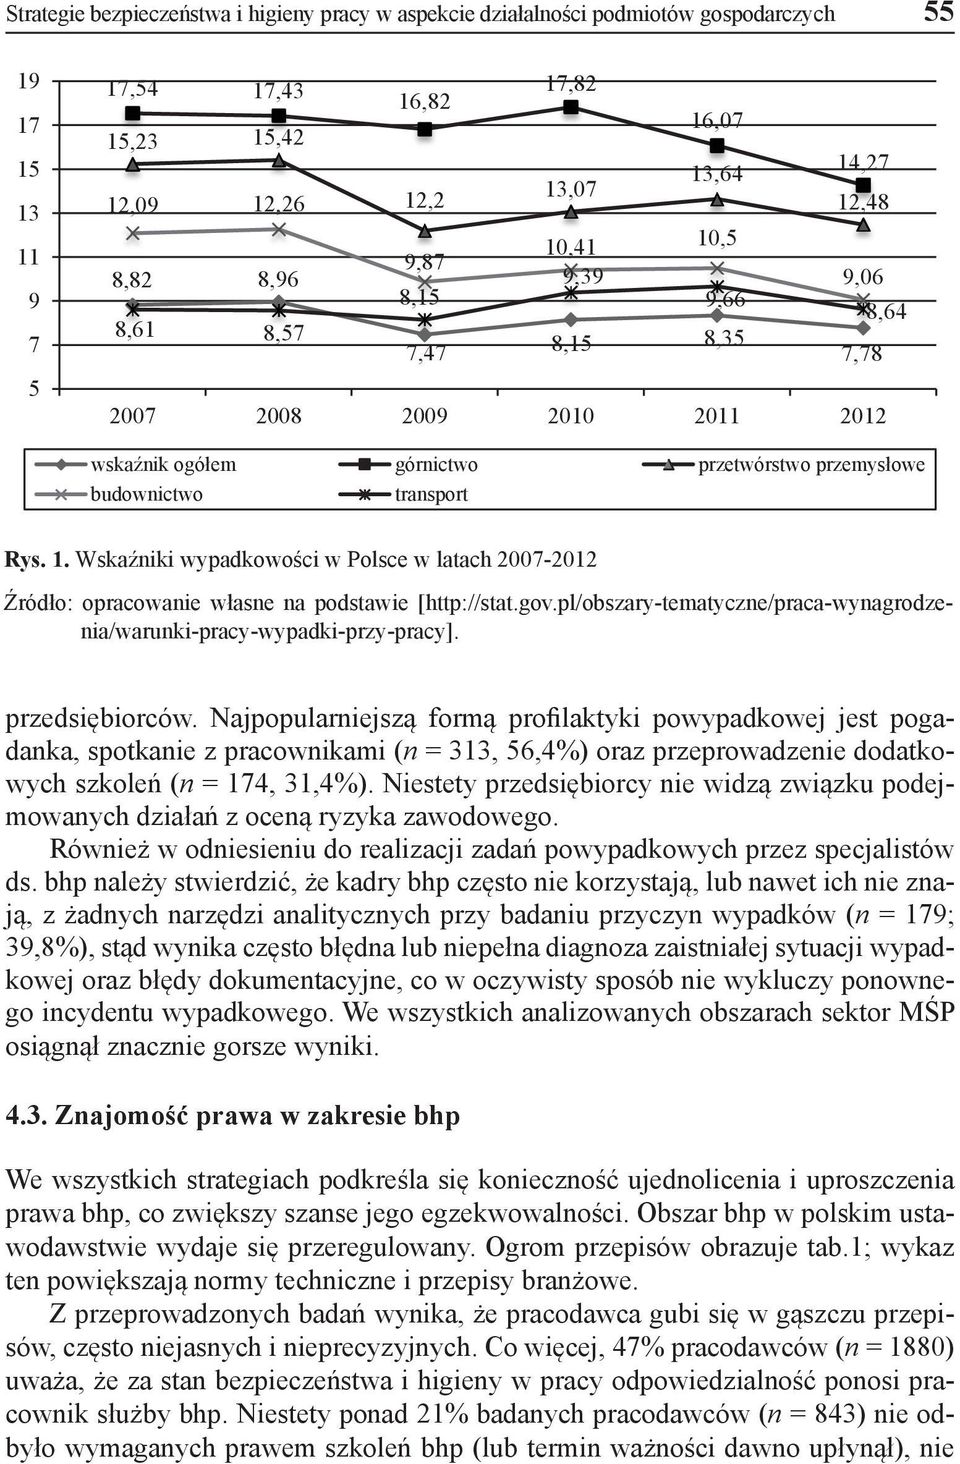 gov.pl/obszary-tematyczne/praca-wynagrodzenia/warunki-pracy-wypadki-przy-pracy]. przedsiębiorców.